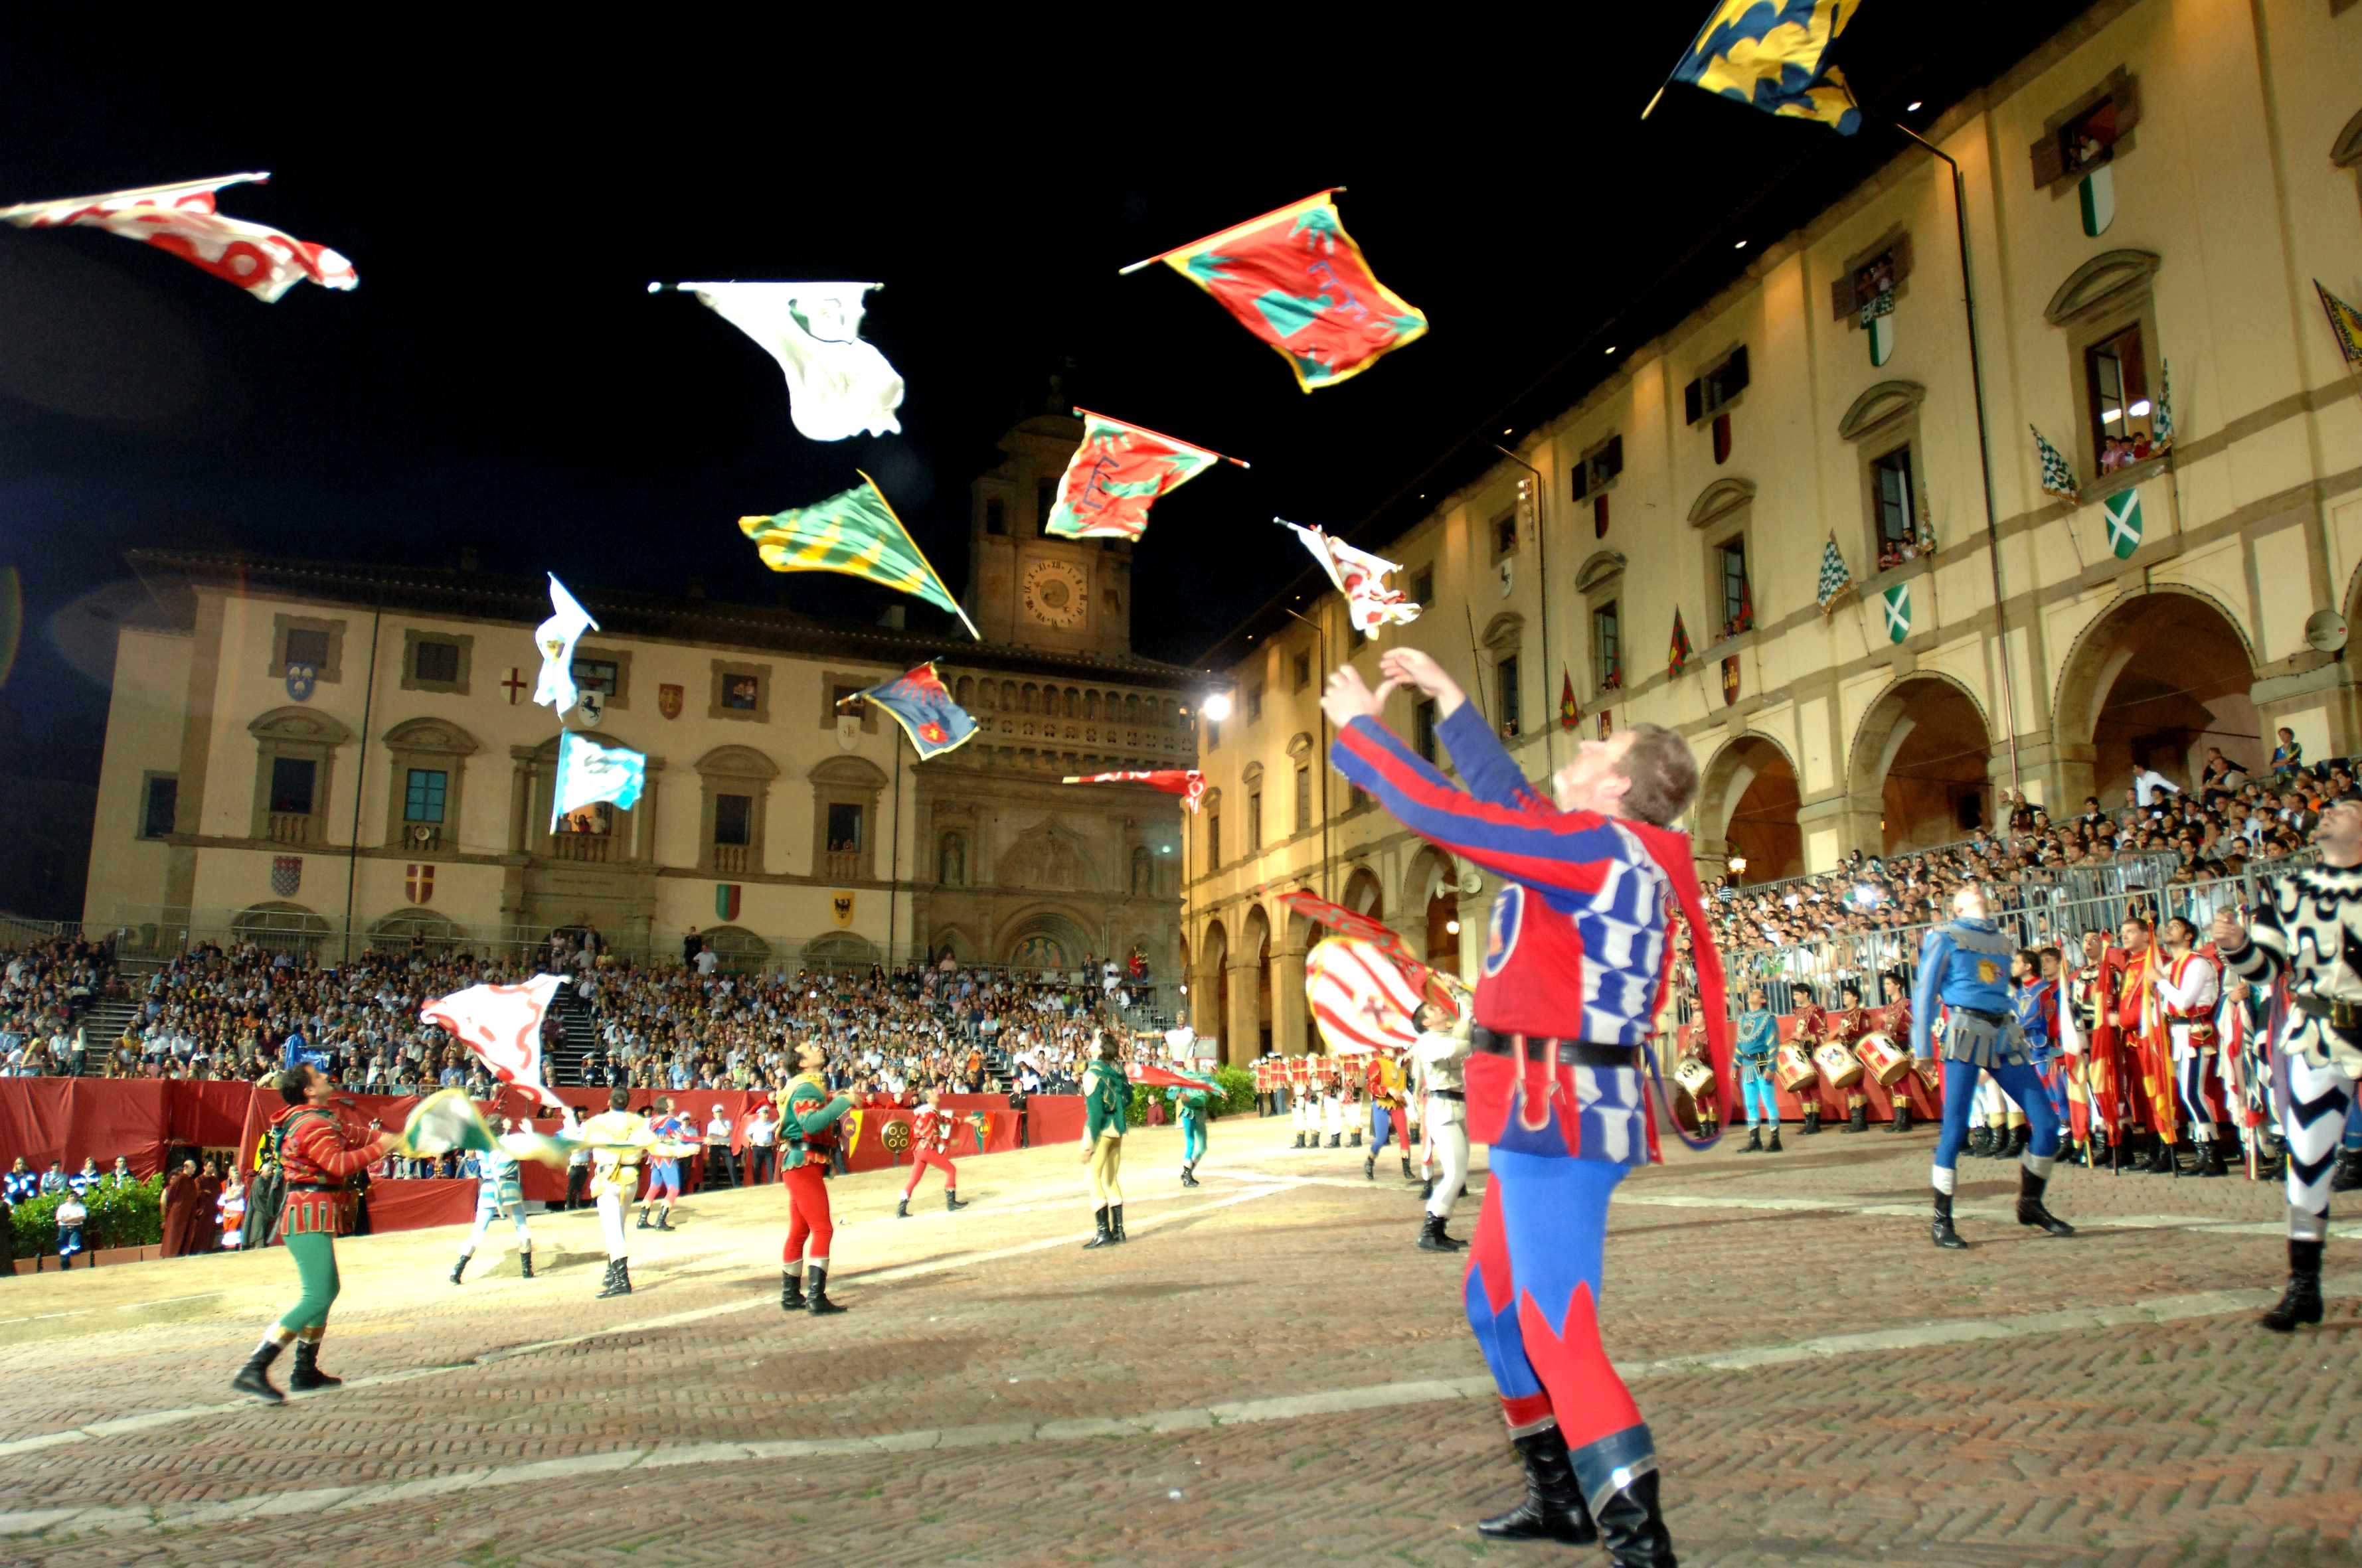 La Joute du Sarrasin 2015 - Arezzo, lanceurs de drapeaux